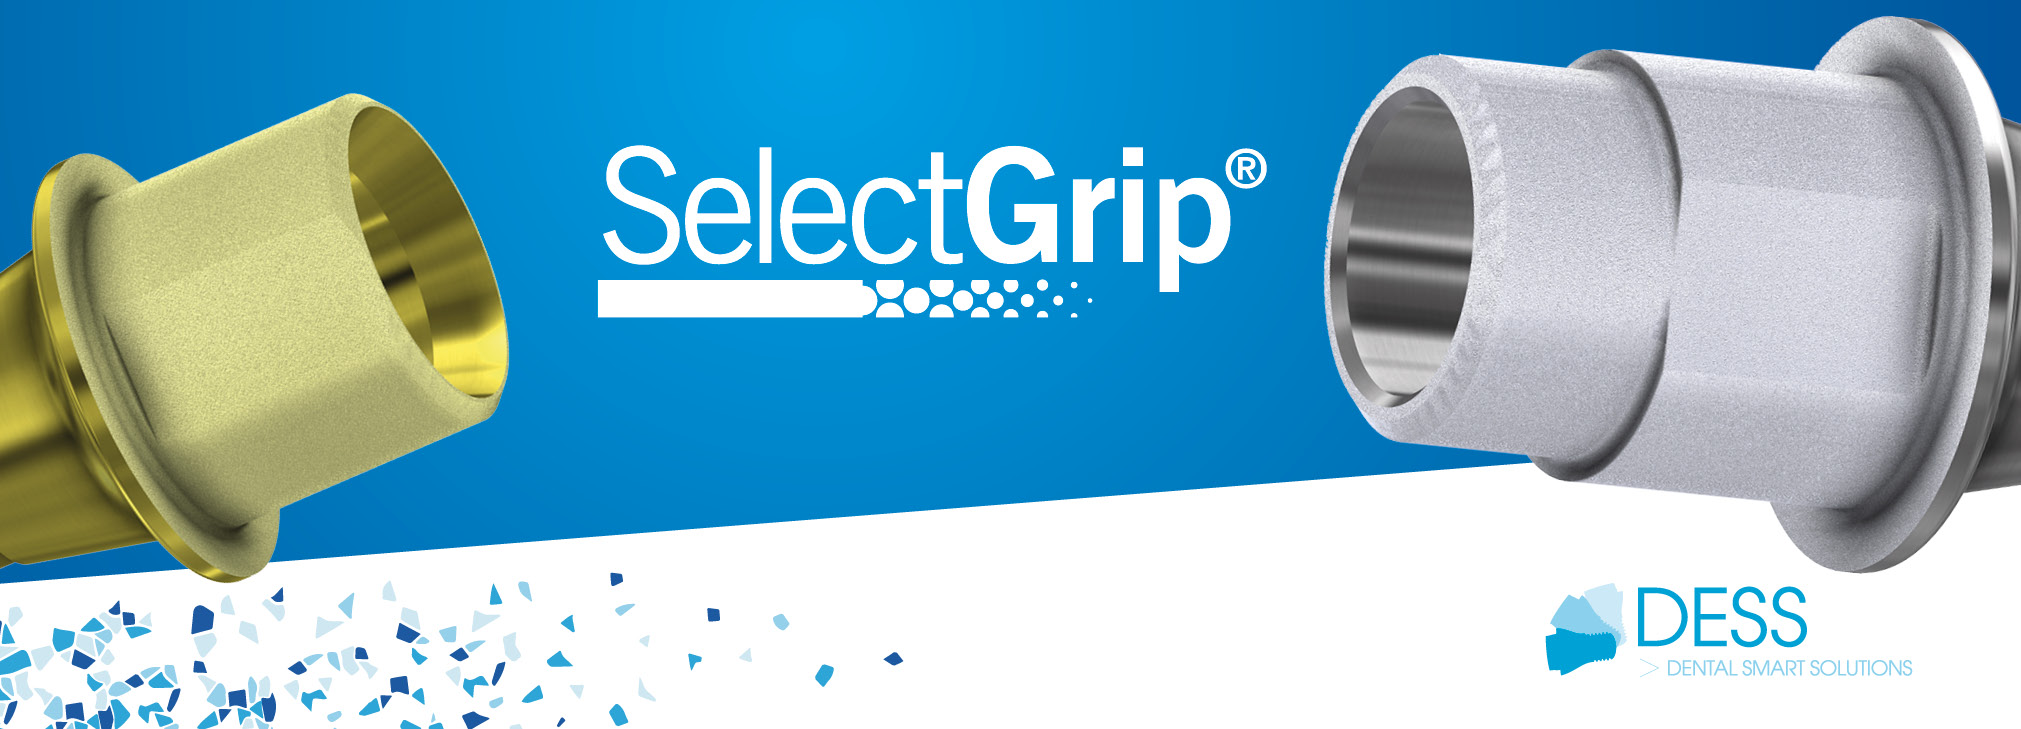 SelectGrip® - Le traitement de surface qui renforce les piliers prothétiques DESS®